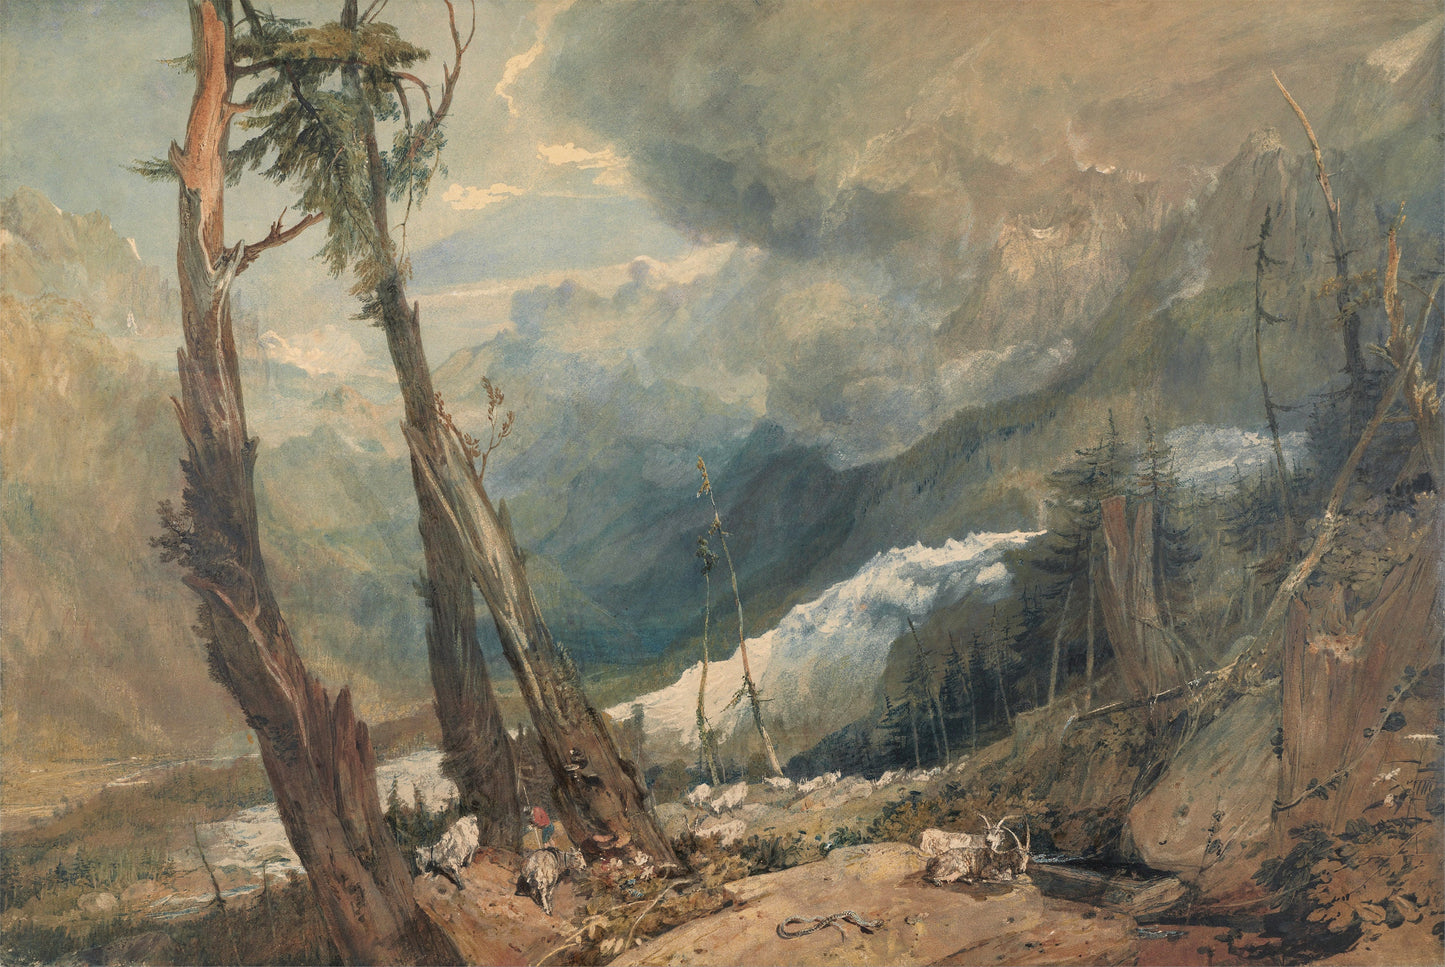 J M W Turner Watercolor & Oil Landscape Paintings Set 2 [35 Images]